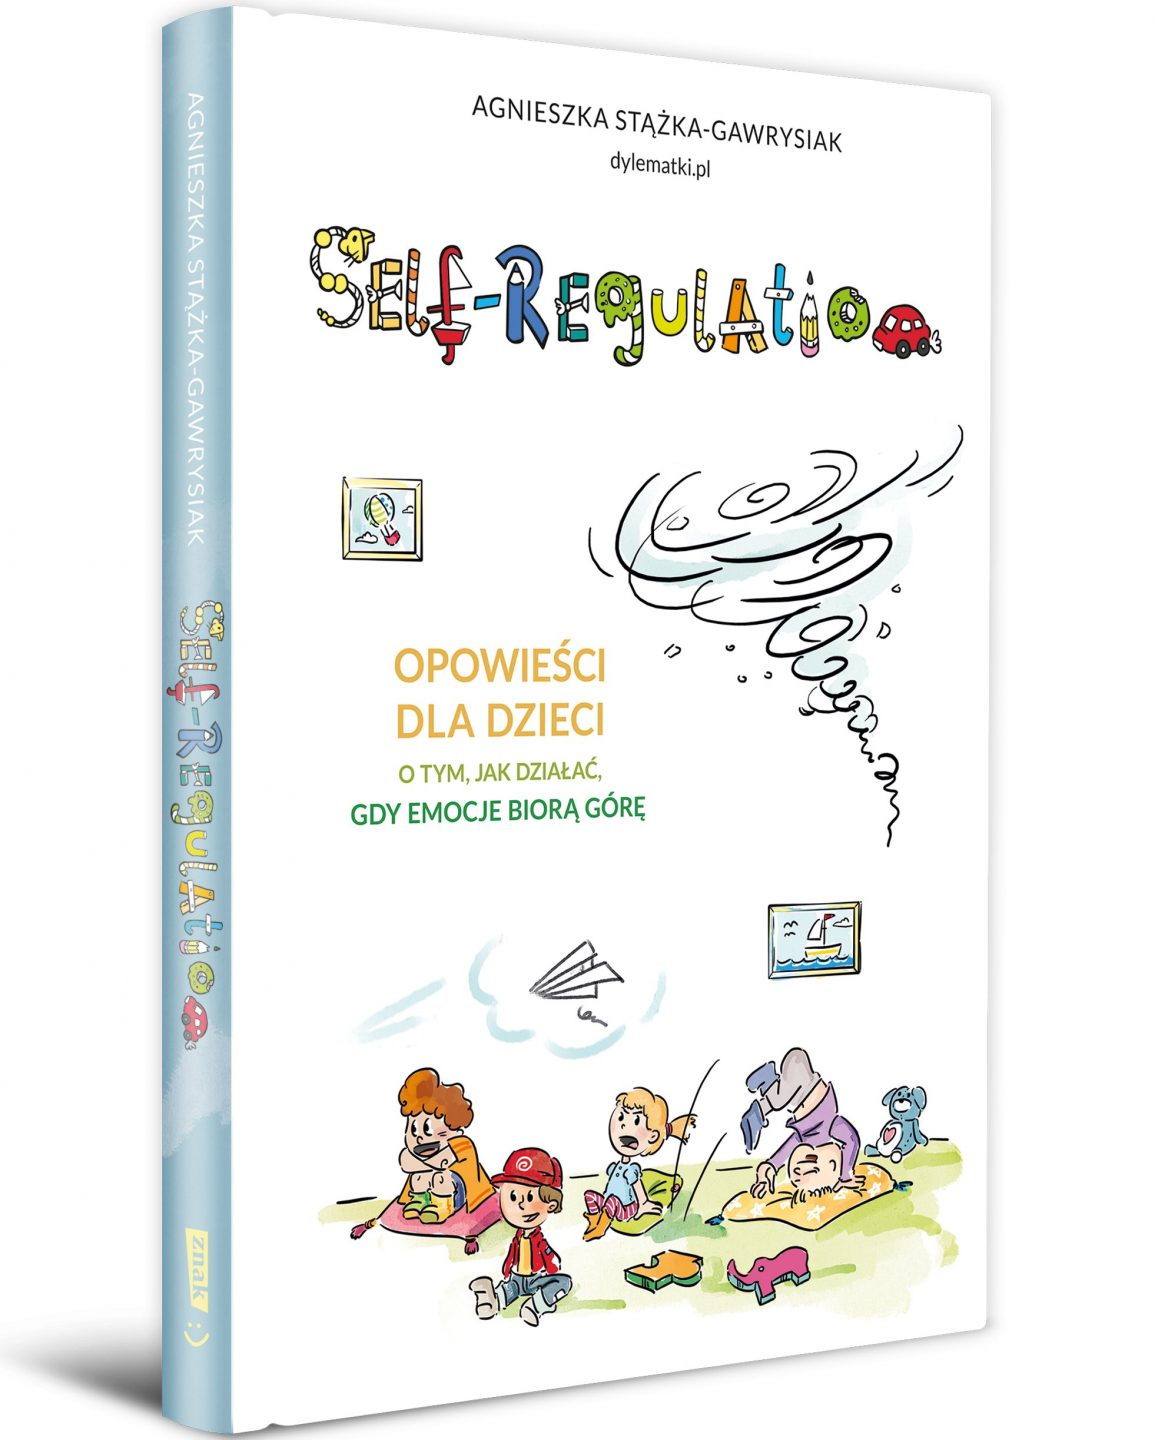 Okładka książki: Self-regulation. Opowieści dla dzieci o tym, jak działać, gdy emocje biorą górę